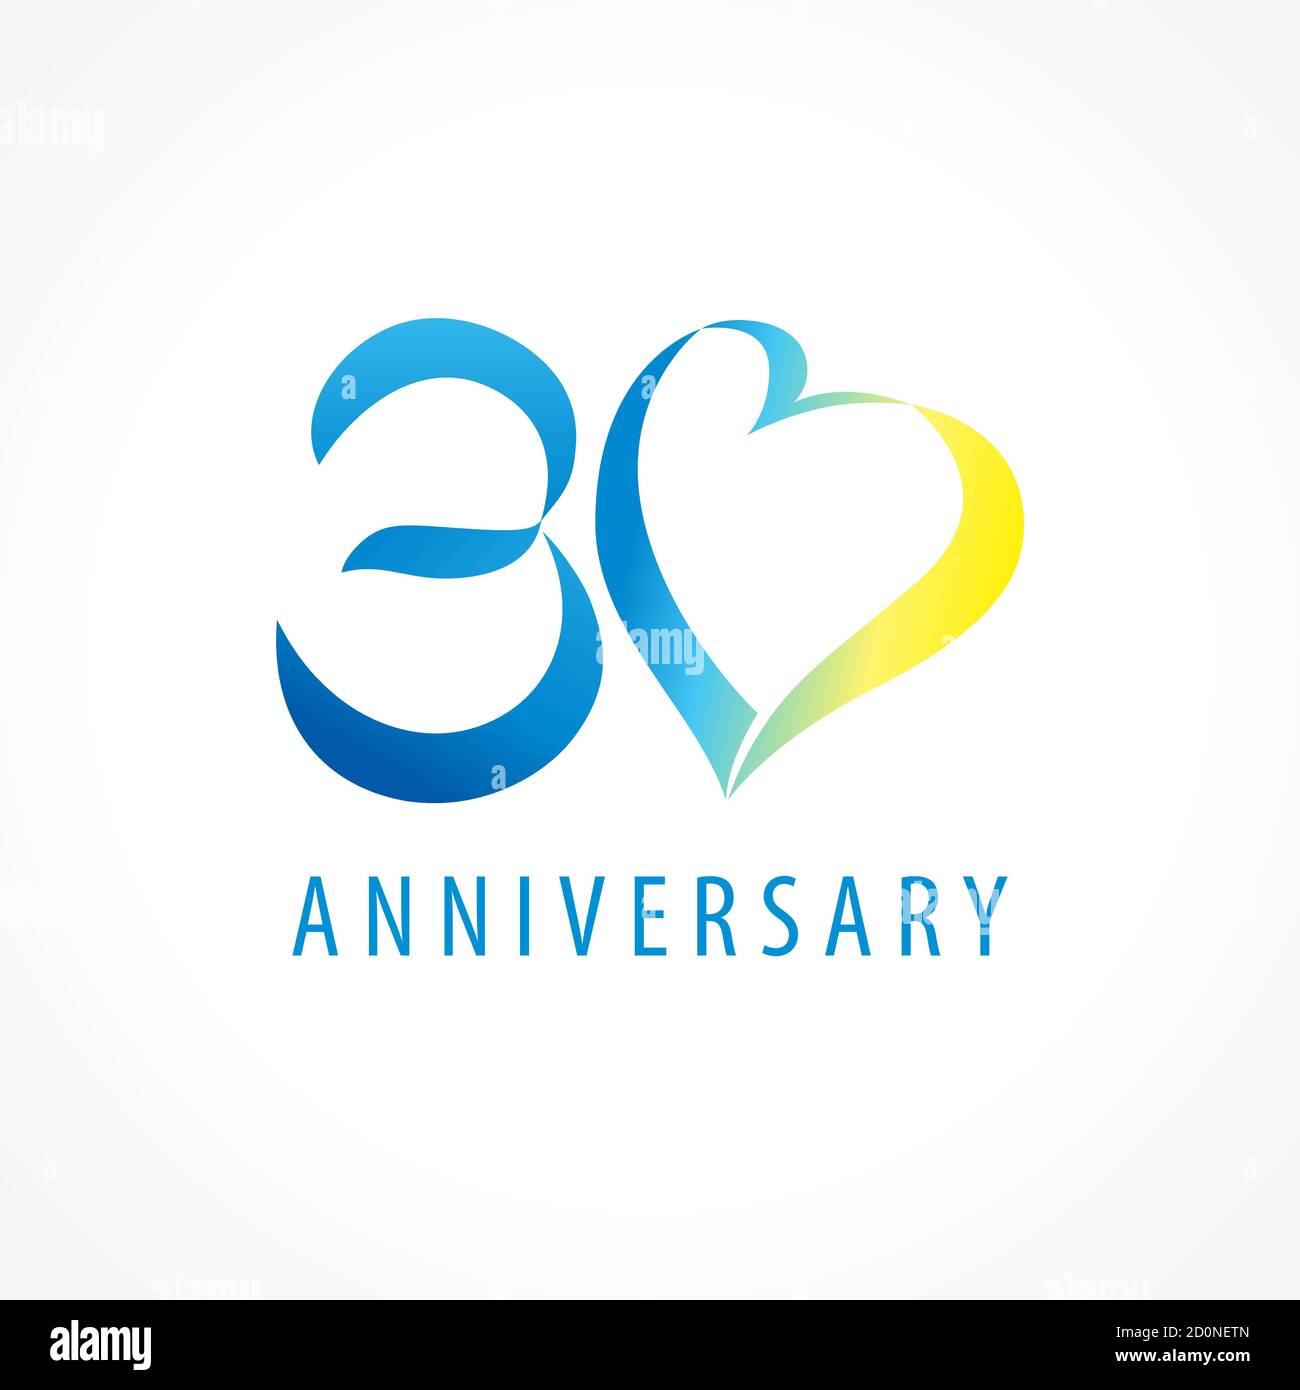 Anniversaire 30 ans cœurs logo à chiffres vectoriels. Voeux d'anniversaire avec ruban encadré en forme de coeur. Numéros abstraits des fêtes. Carte charmante pour célébrer Illustration de Vecteur